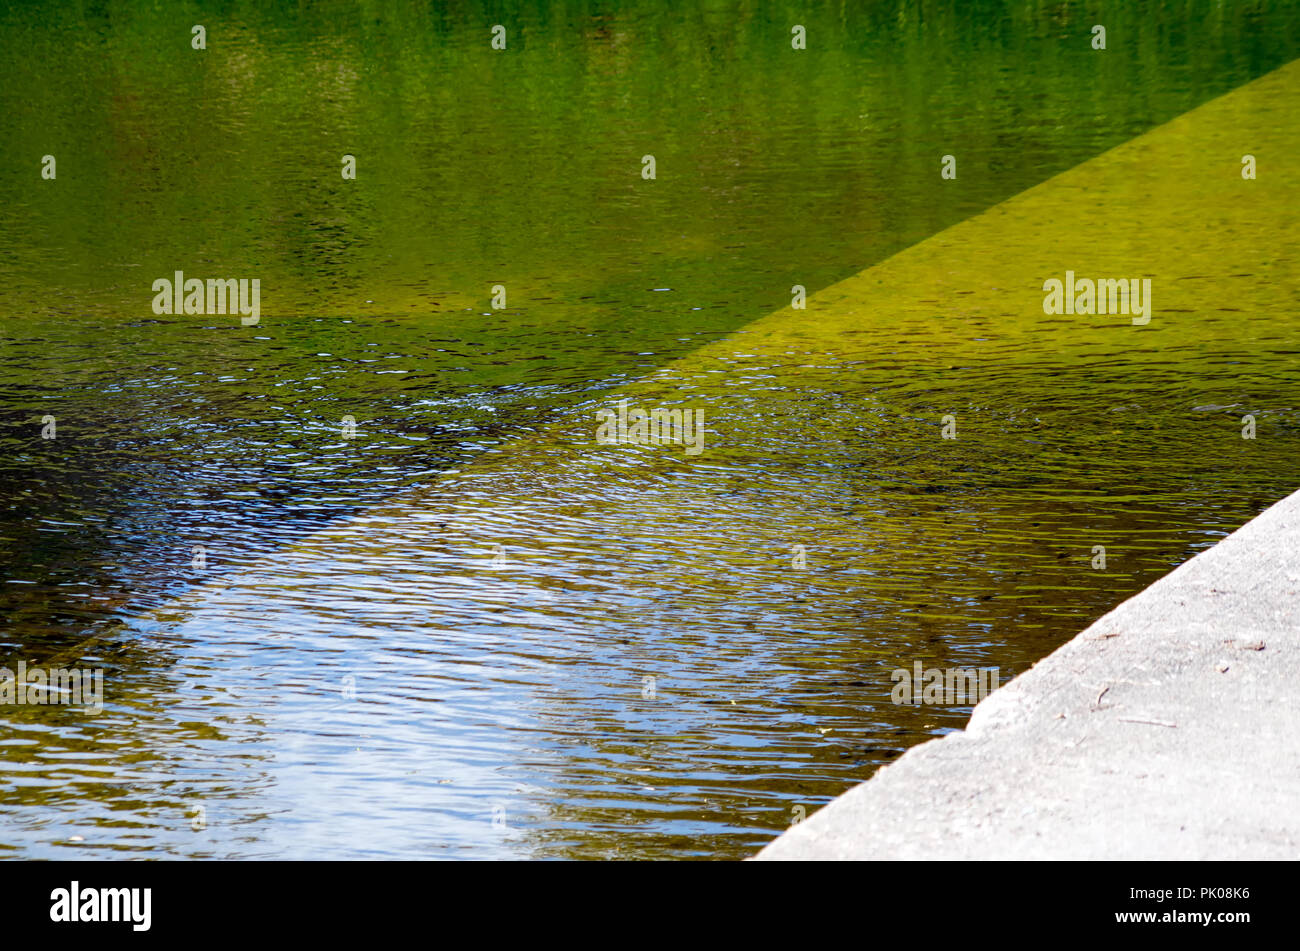 Verde, ámbar y oro, colores reflejados en la superficie rugosa de un cuerpo de agua, fondo, ver tres. Foto de stock